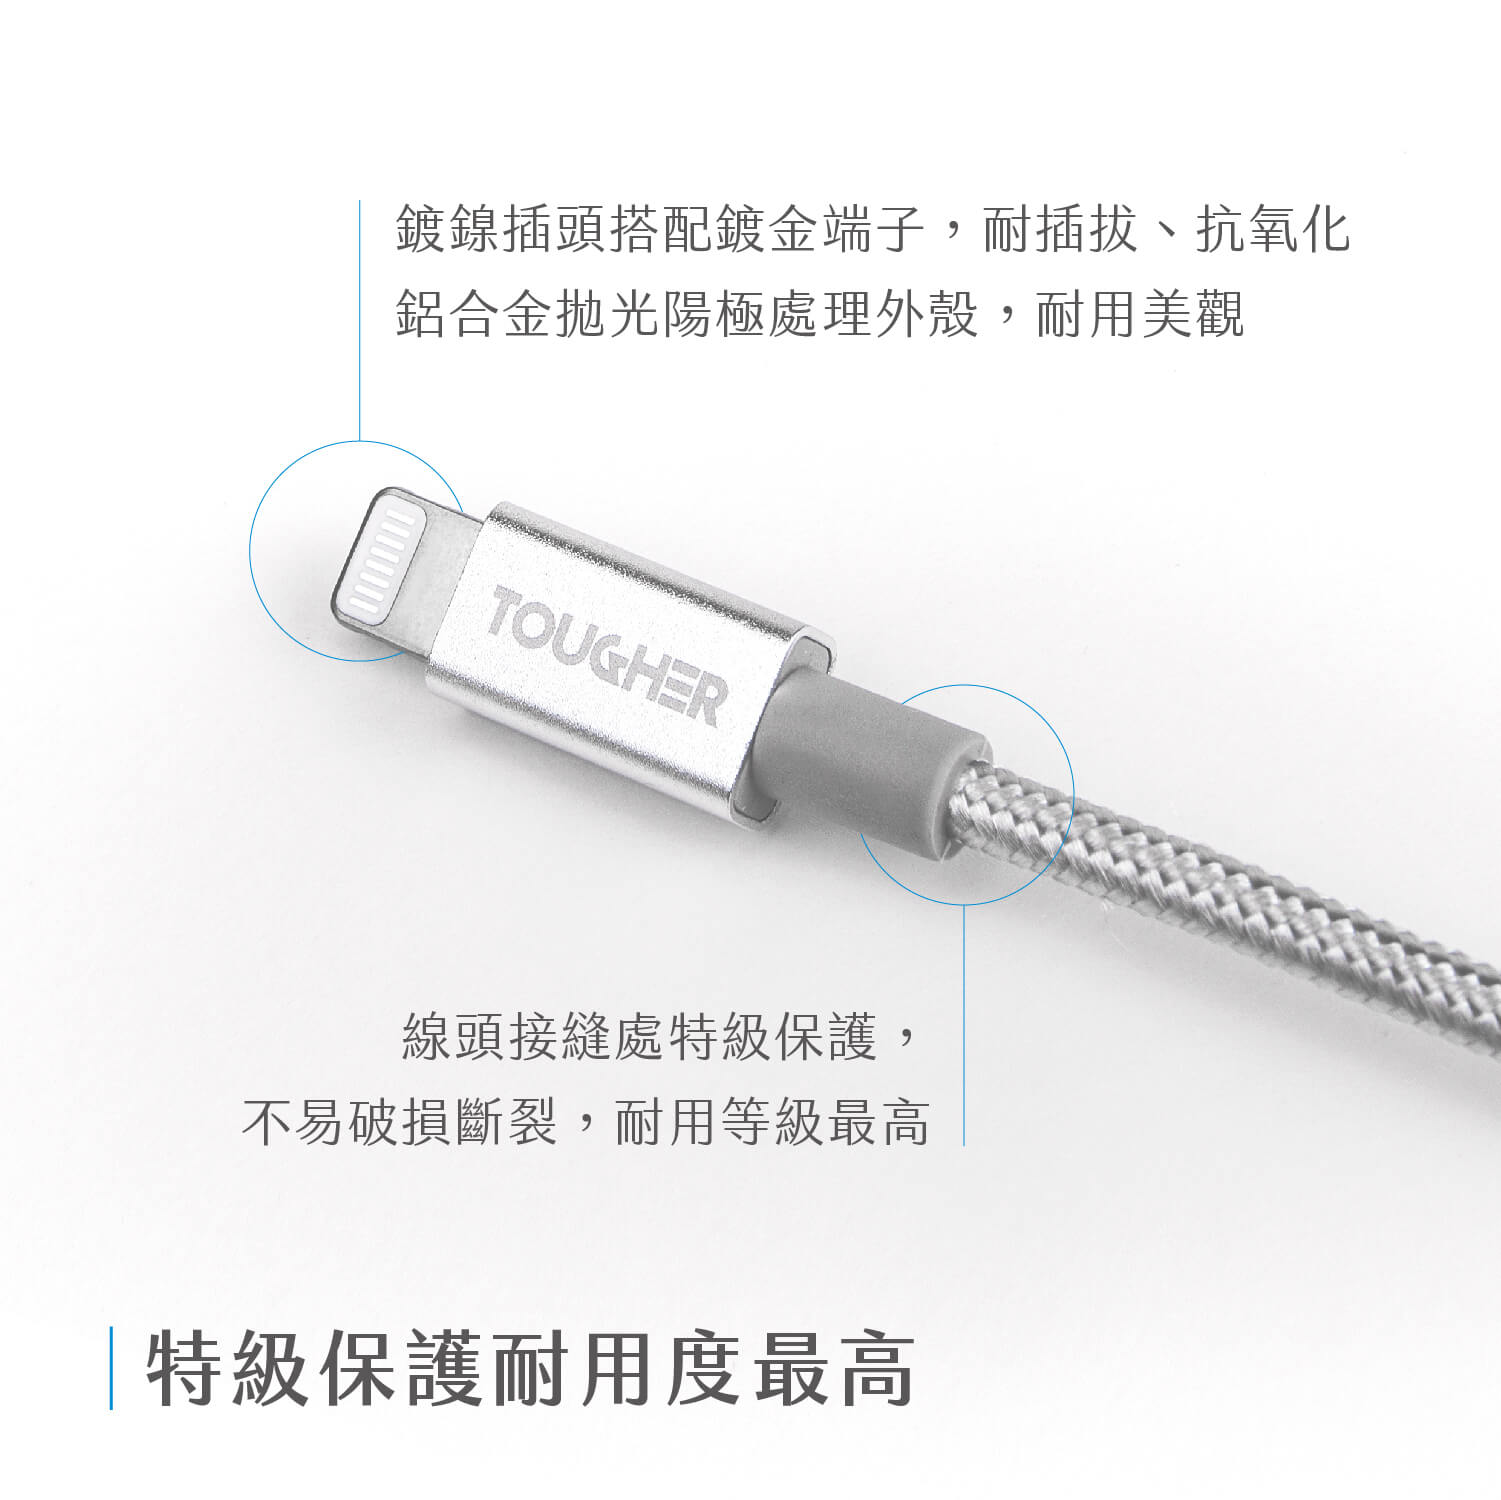 TOUGHER USB-C to Lighting 1.2m金屬編織傳輸線